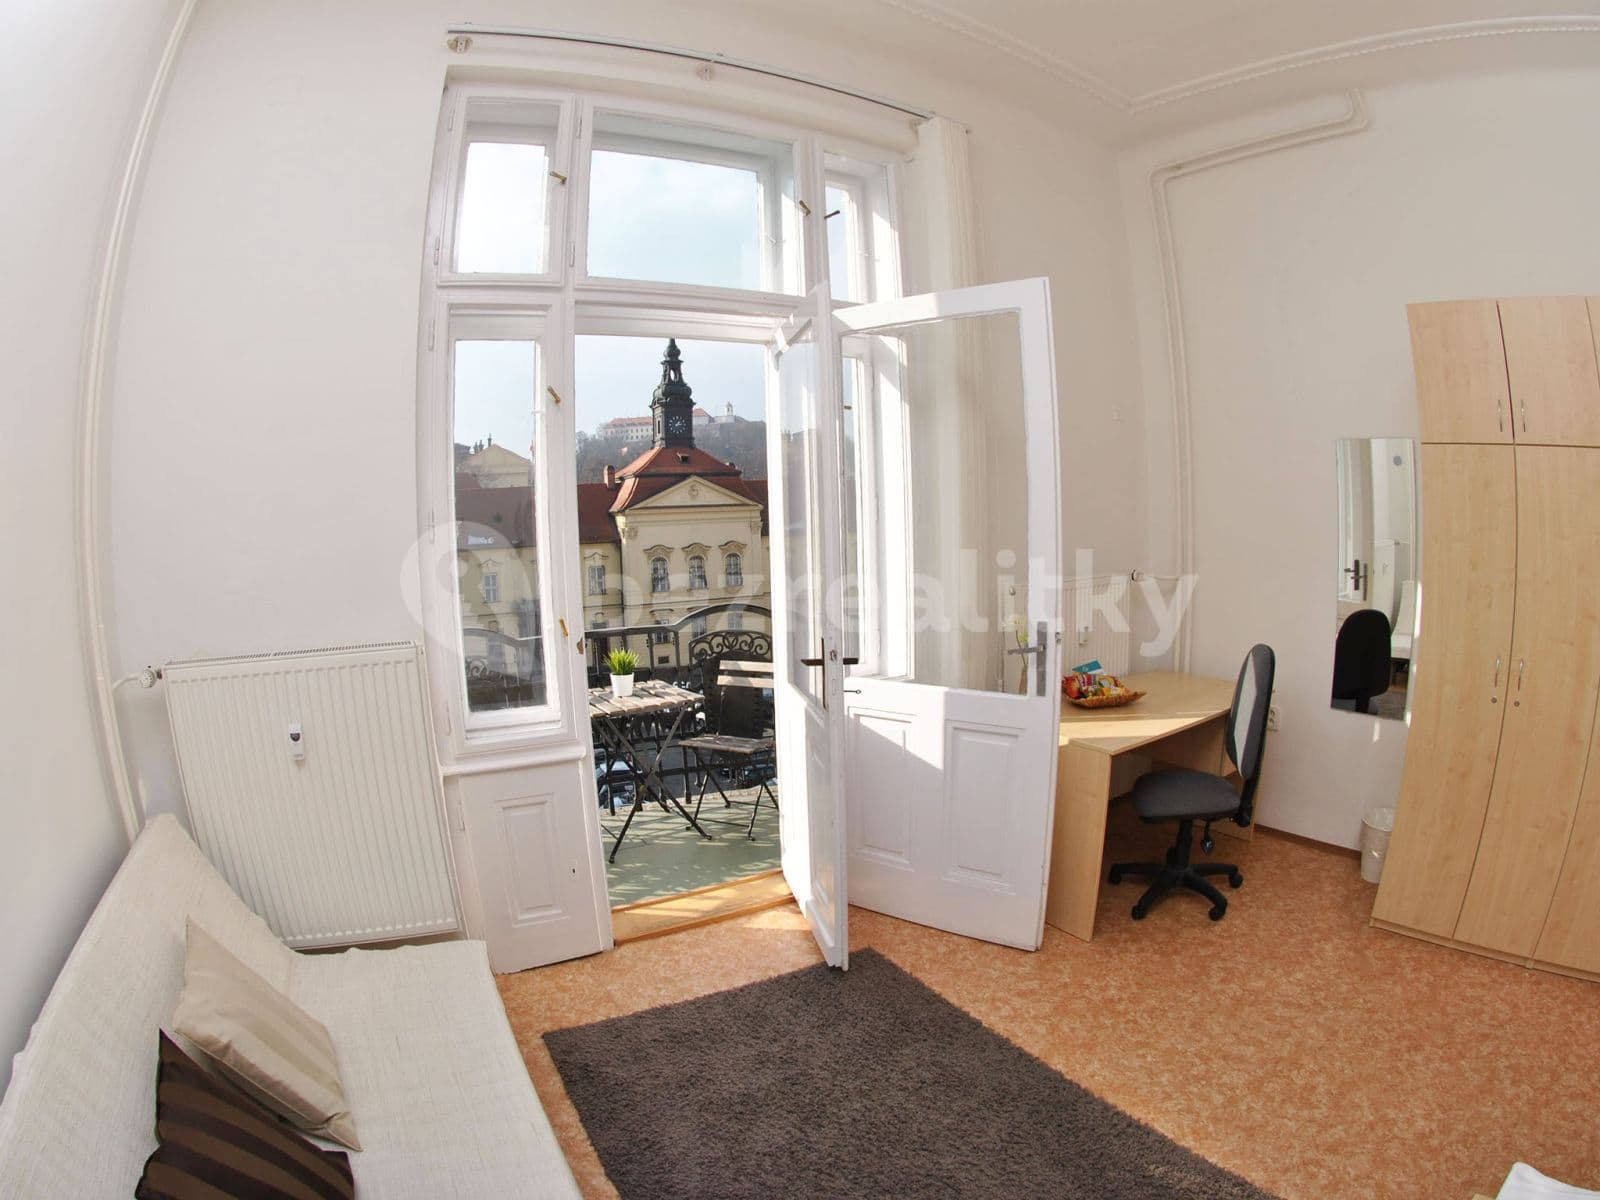 3 bedroom flat to rent, 88 m², Dominikánské náměstí, Brno, Jihomoravský Region